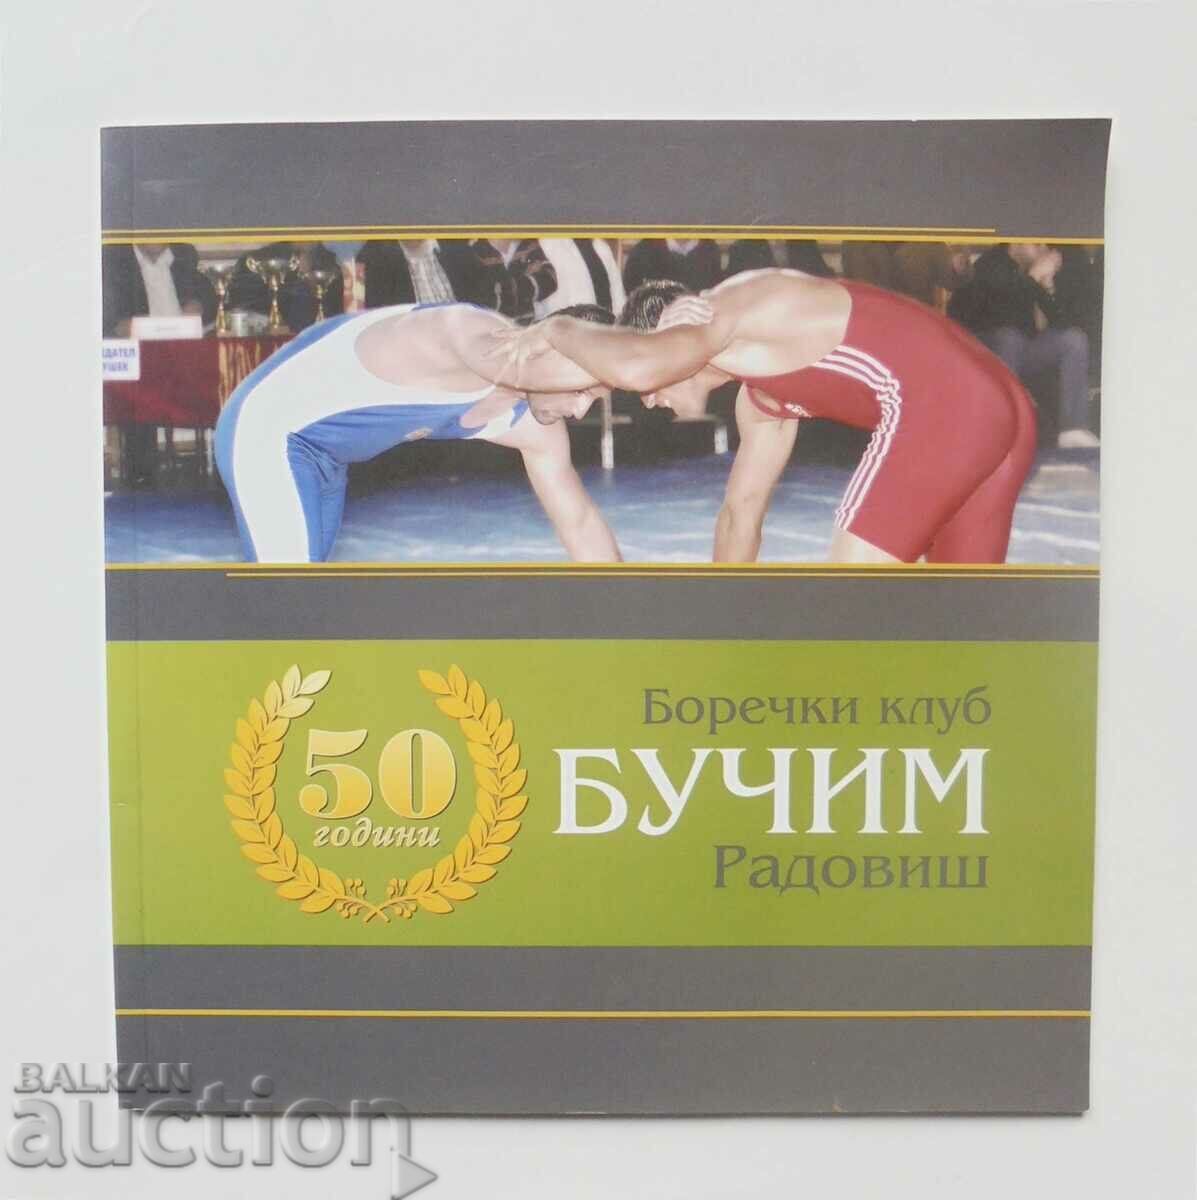 50 години боречки клуб "Бучим" - Радовиш 2012 г.